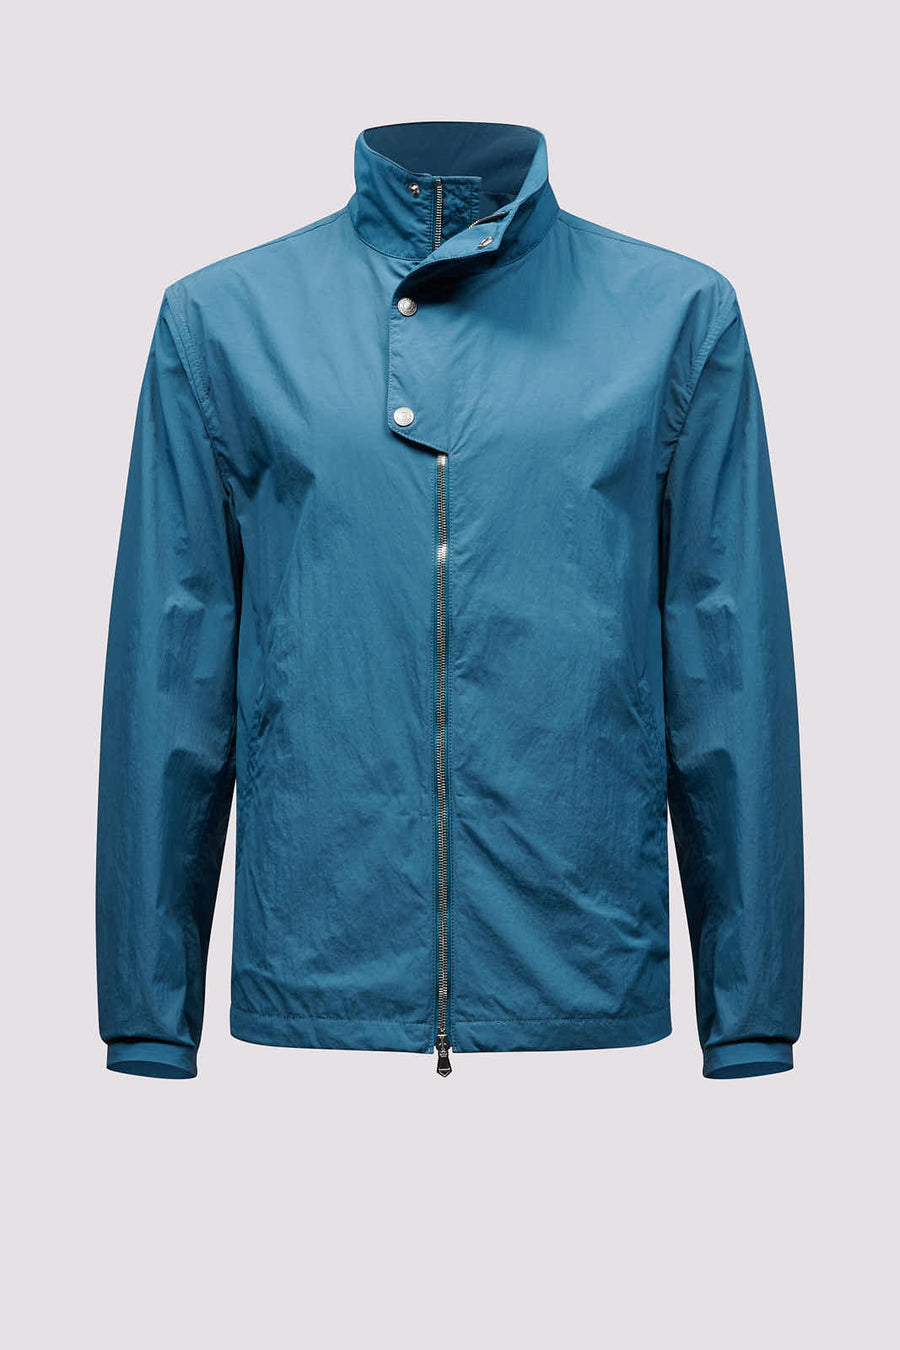 Windbreaker Jacket Teal Blue